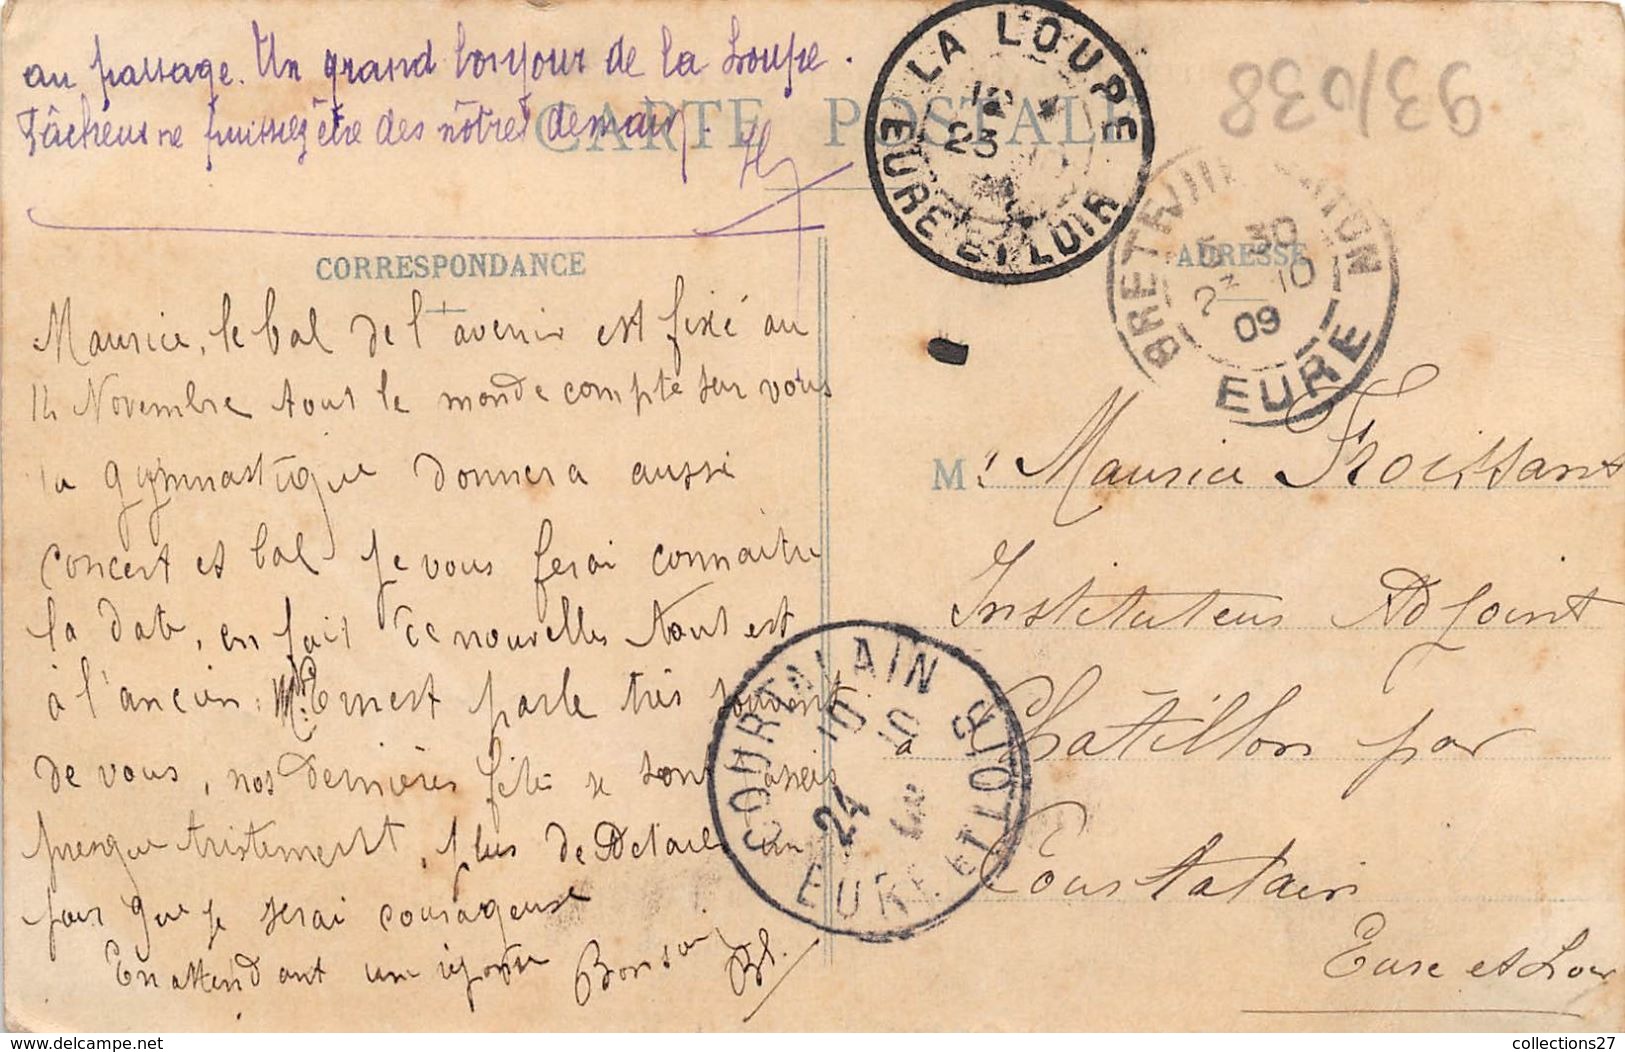 27-BRETEUIL- FÊTE DE GYMNASTIQUE DU 12 SEPTEMBRE 1909 - Breteuil